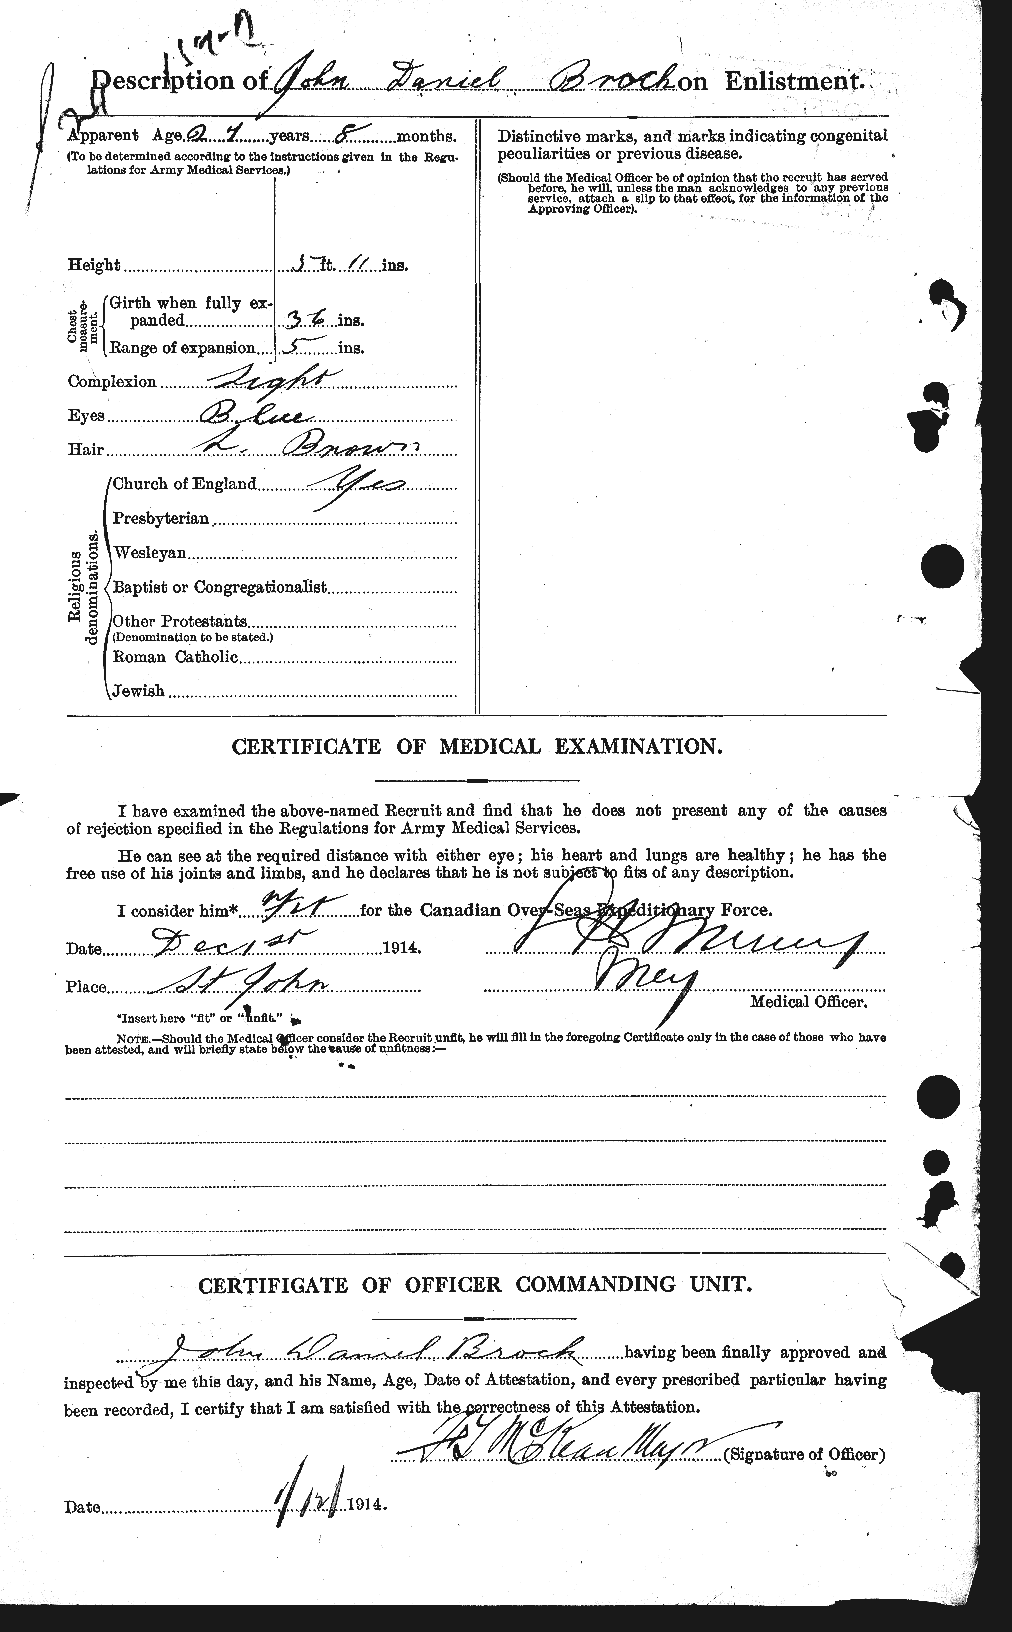 Dossiers du Personnel de la Première Guerre mondiale - CEC 258219b